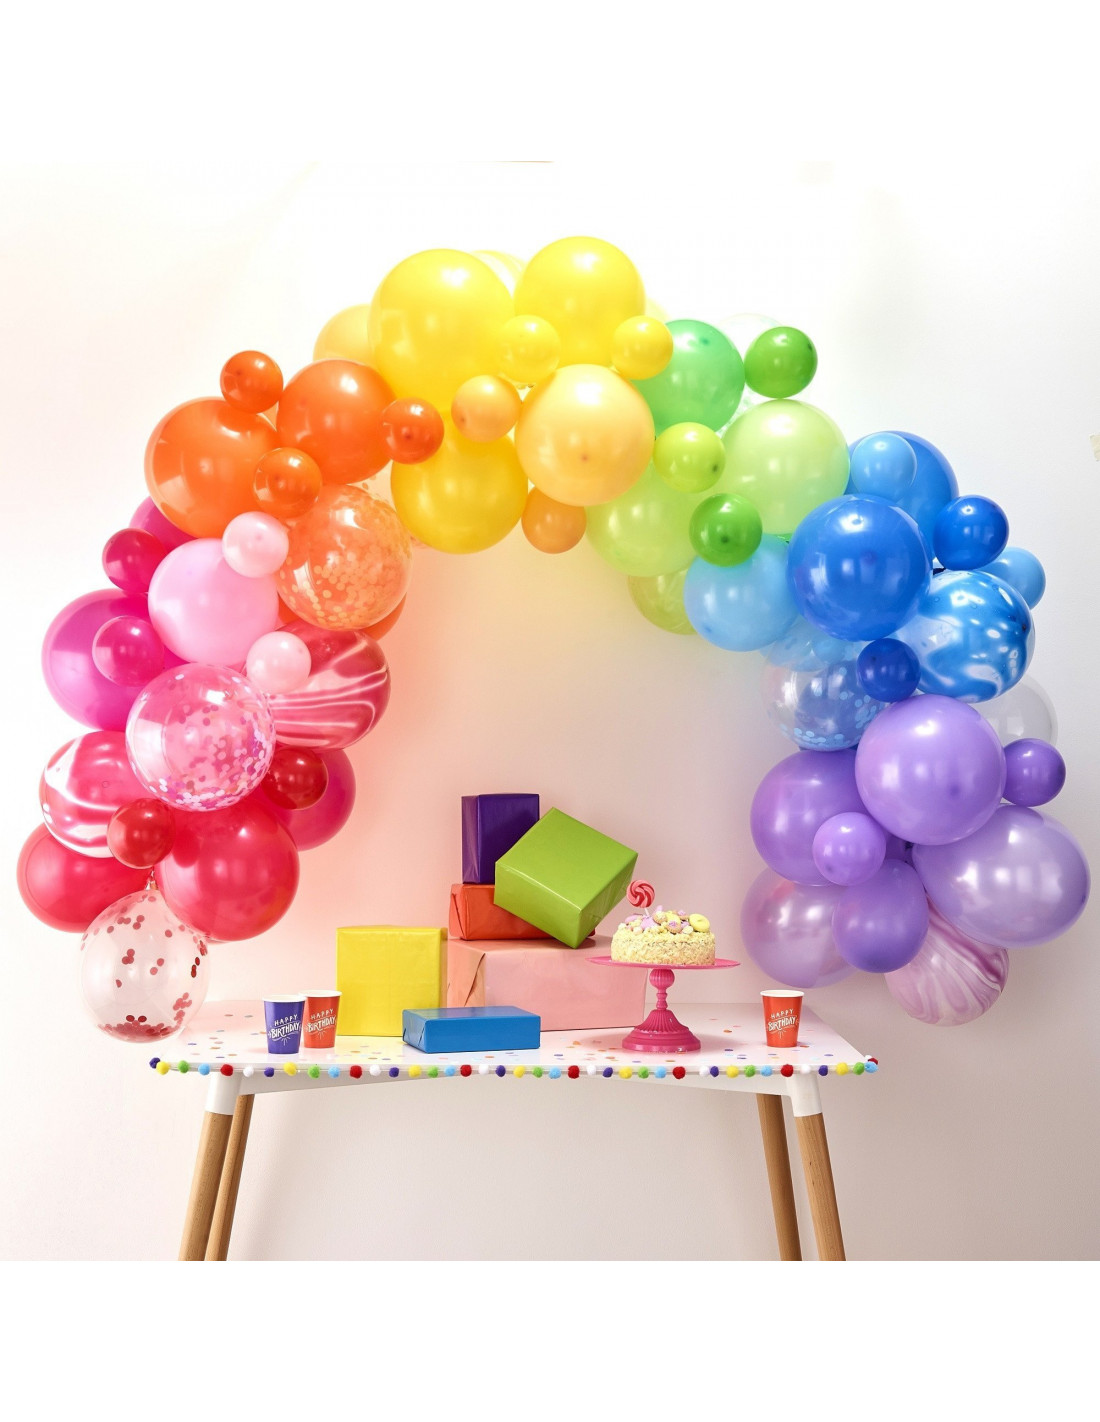 Kit Arche de Ballon Anniversaire Multicolore - déco